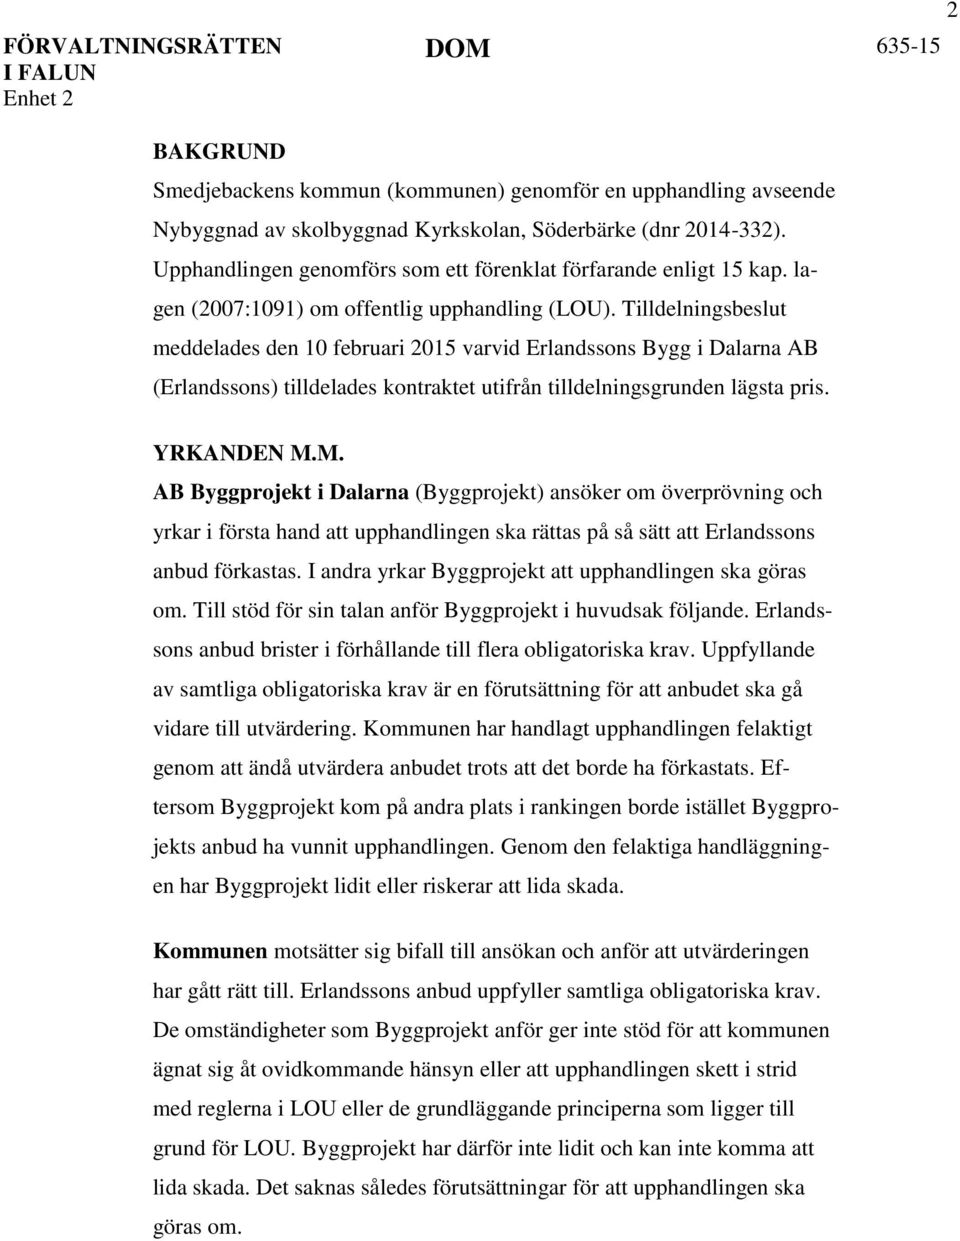 Tilldelningsbeslut meddelades den 10 februari 2015 varvid Erlandssons Bygg i Dalarna AB (Erlandssons) tilldelades kontraktet utifrån tilldelningsgrunden lägsta pris. YRKANDEN M.